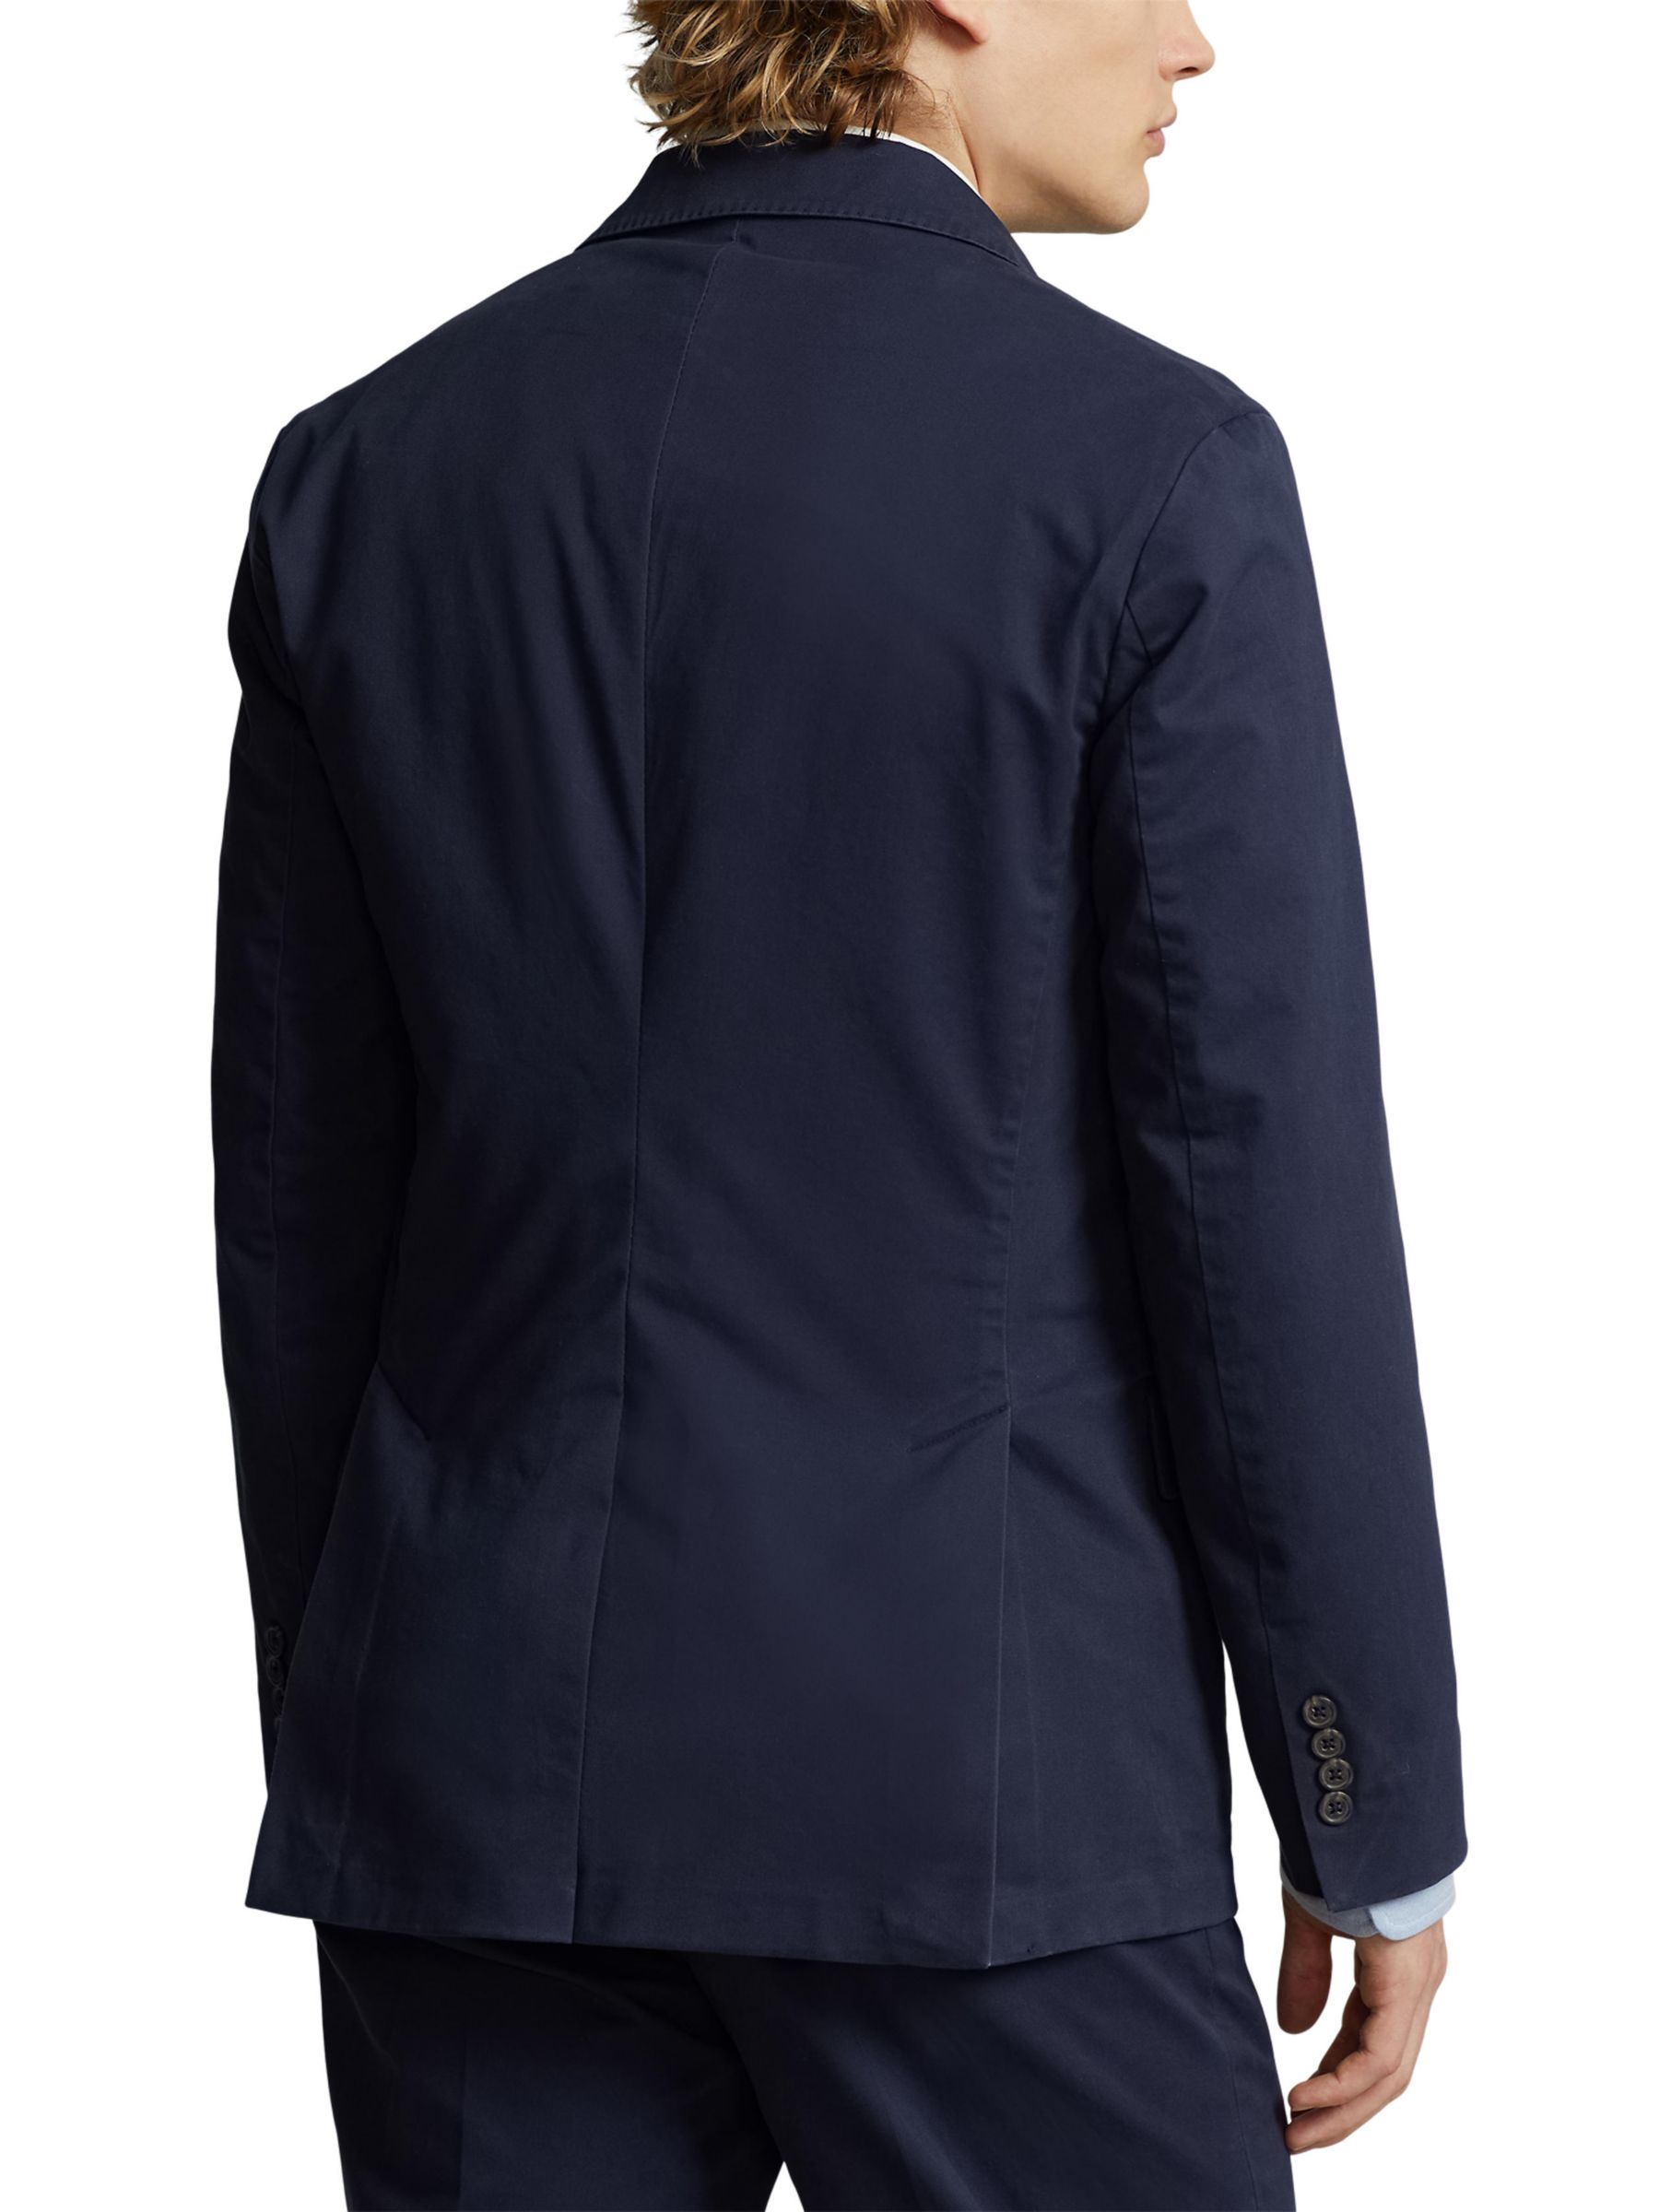 Buy Polo Ralph Lauren Sport Coat Blazer Online at johnlewis.com